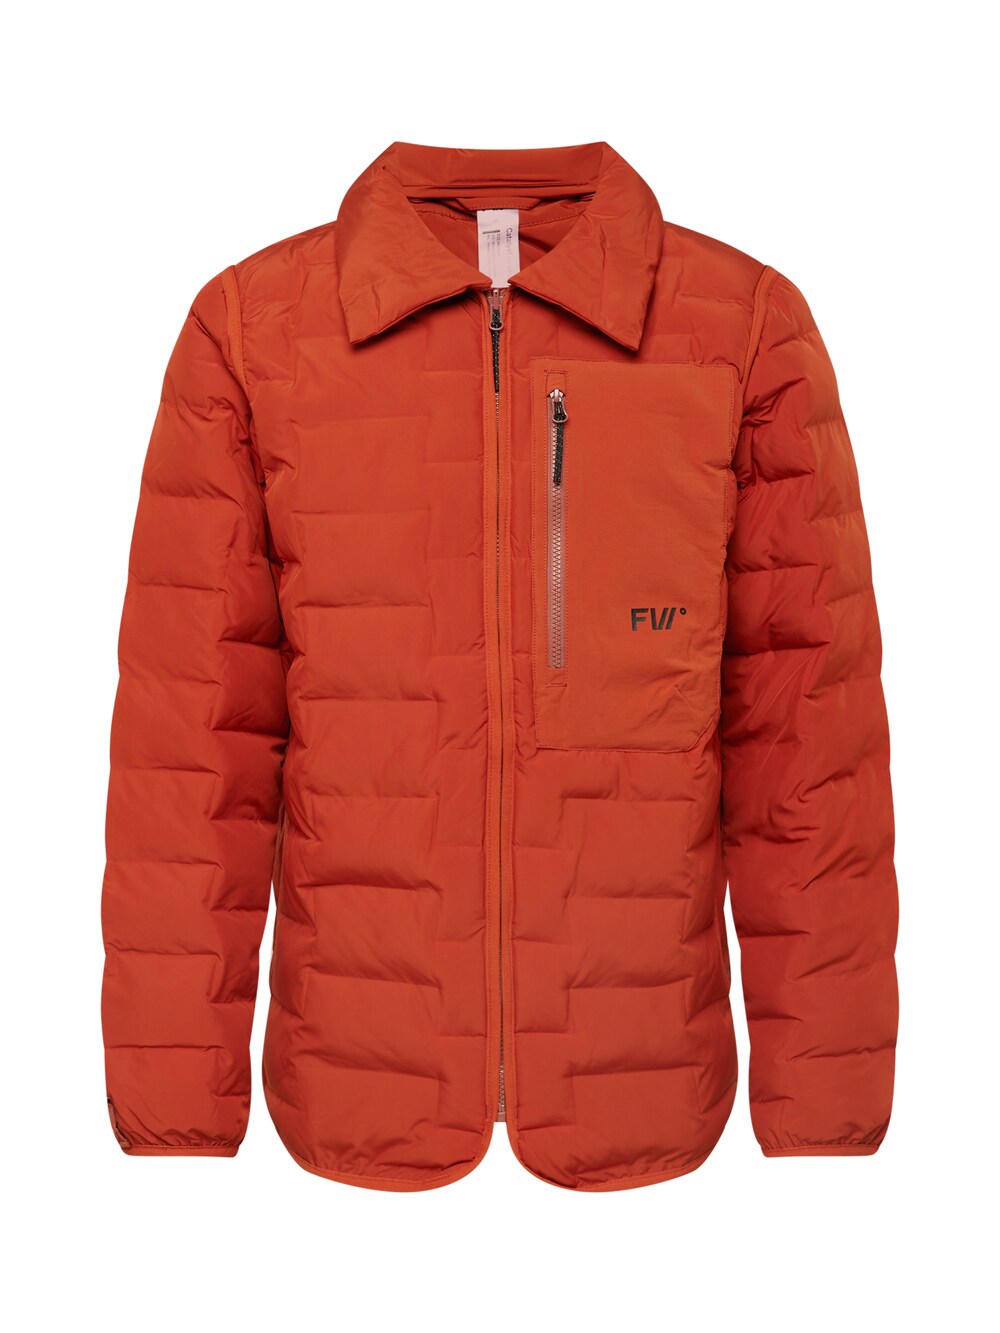 Межсезонная куртка Fw, оранжево-красный межсезонная куртка superdry оранжево красный